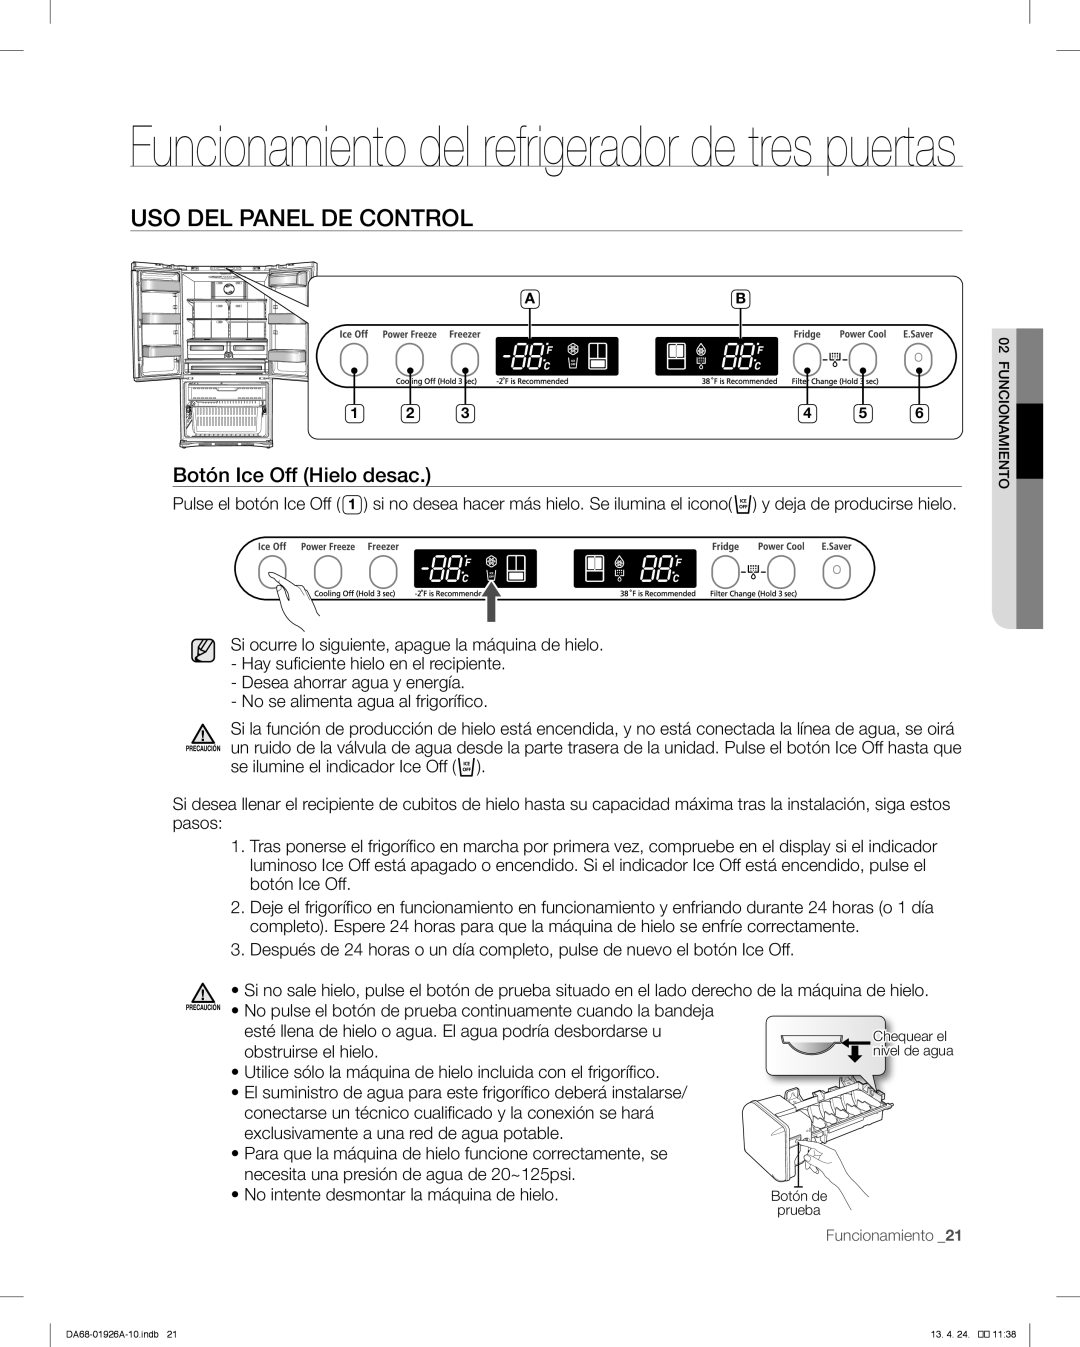 Samsung RFG293HAWP Funcionamiento del refrigerador de tres puertas, Uso Del Panel De Control, Botón Ice Off Hielo desac 